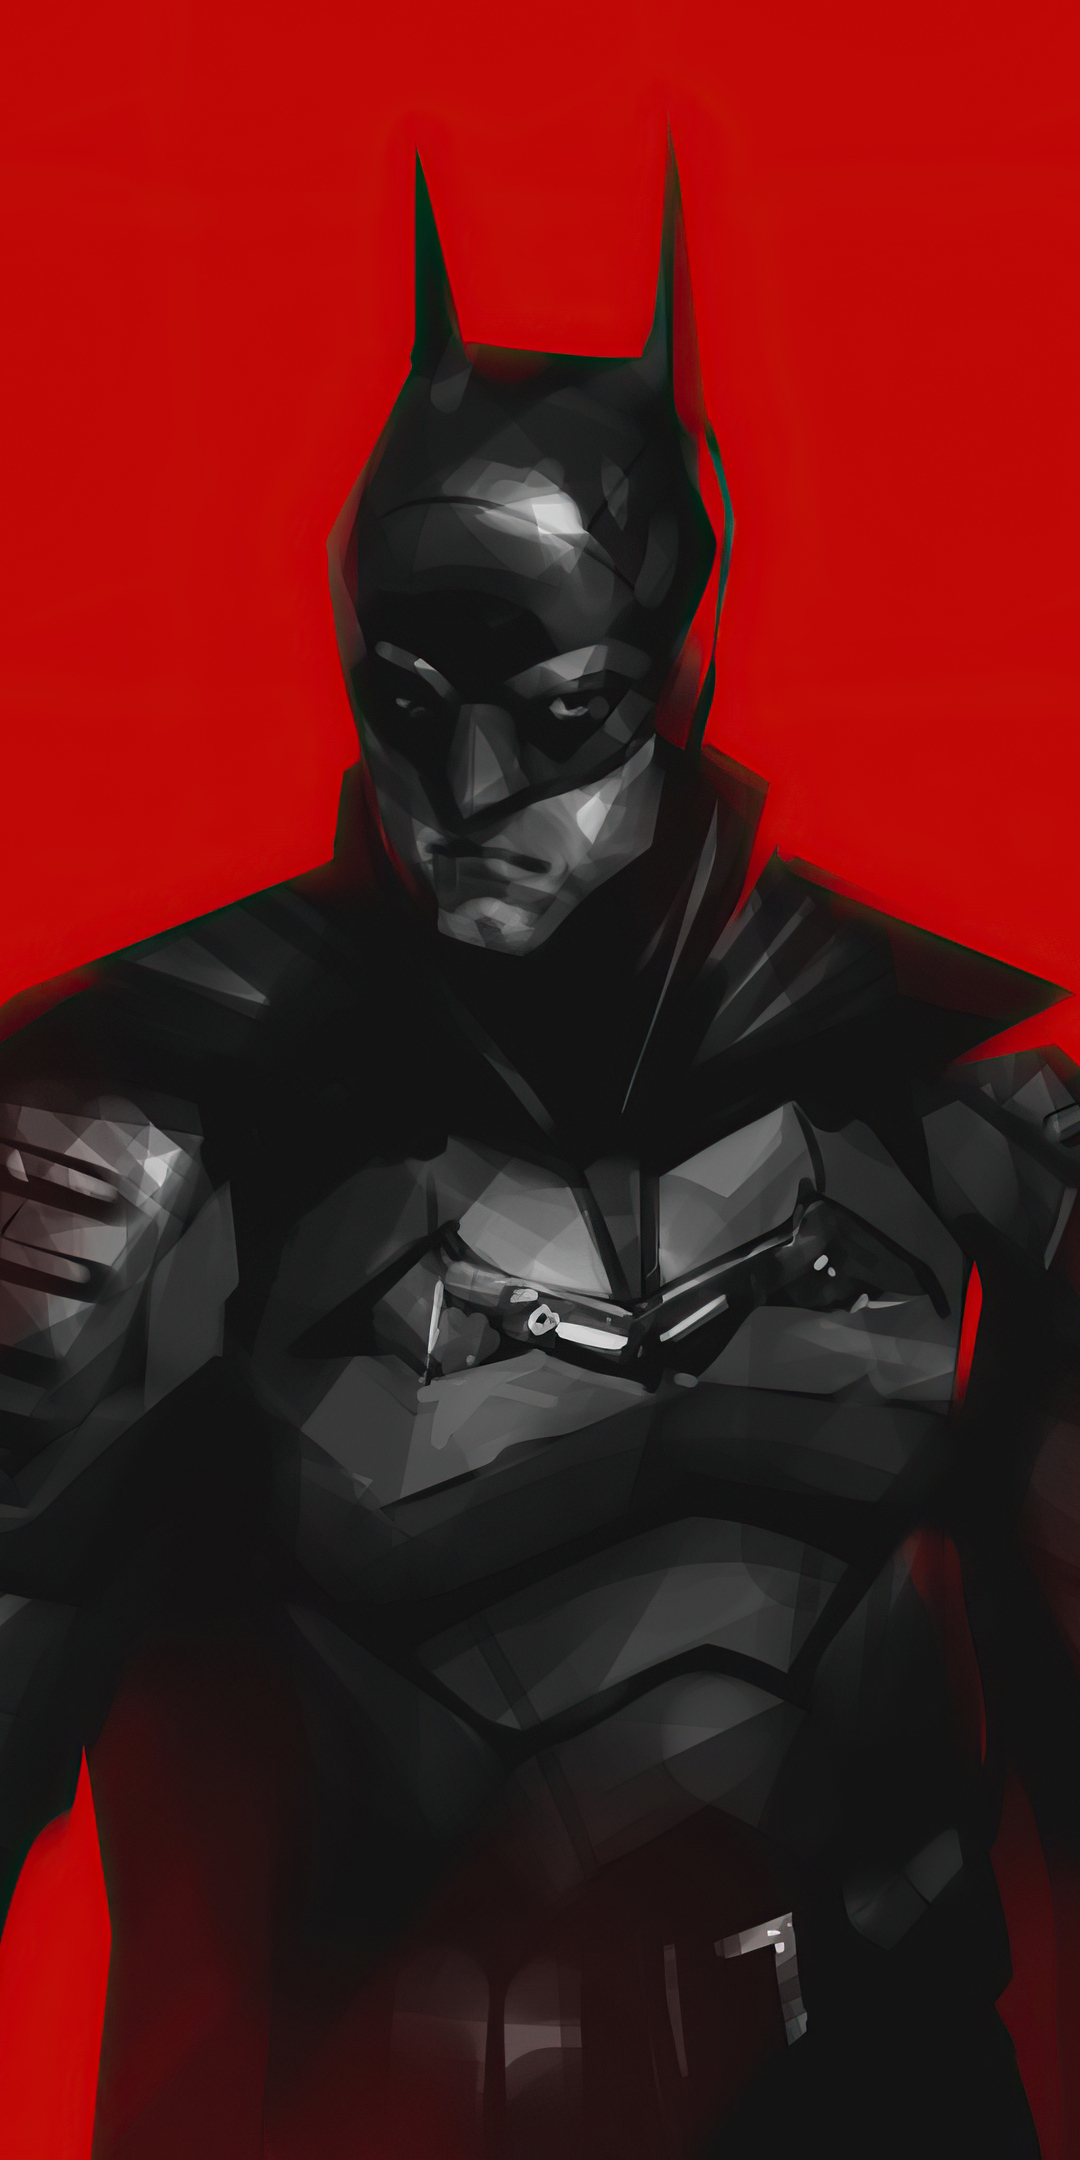 the-batman-2021-red-6r.jpg